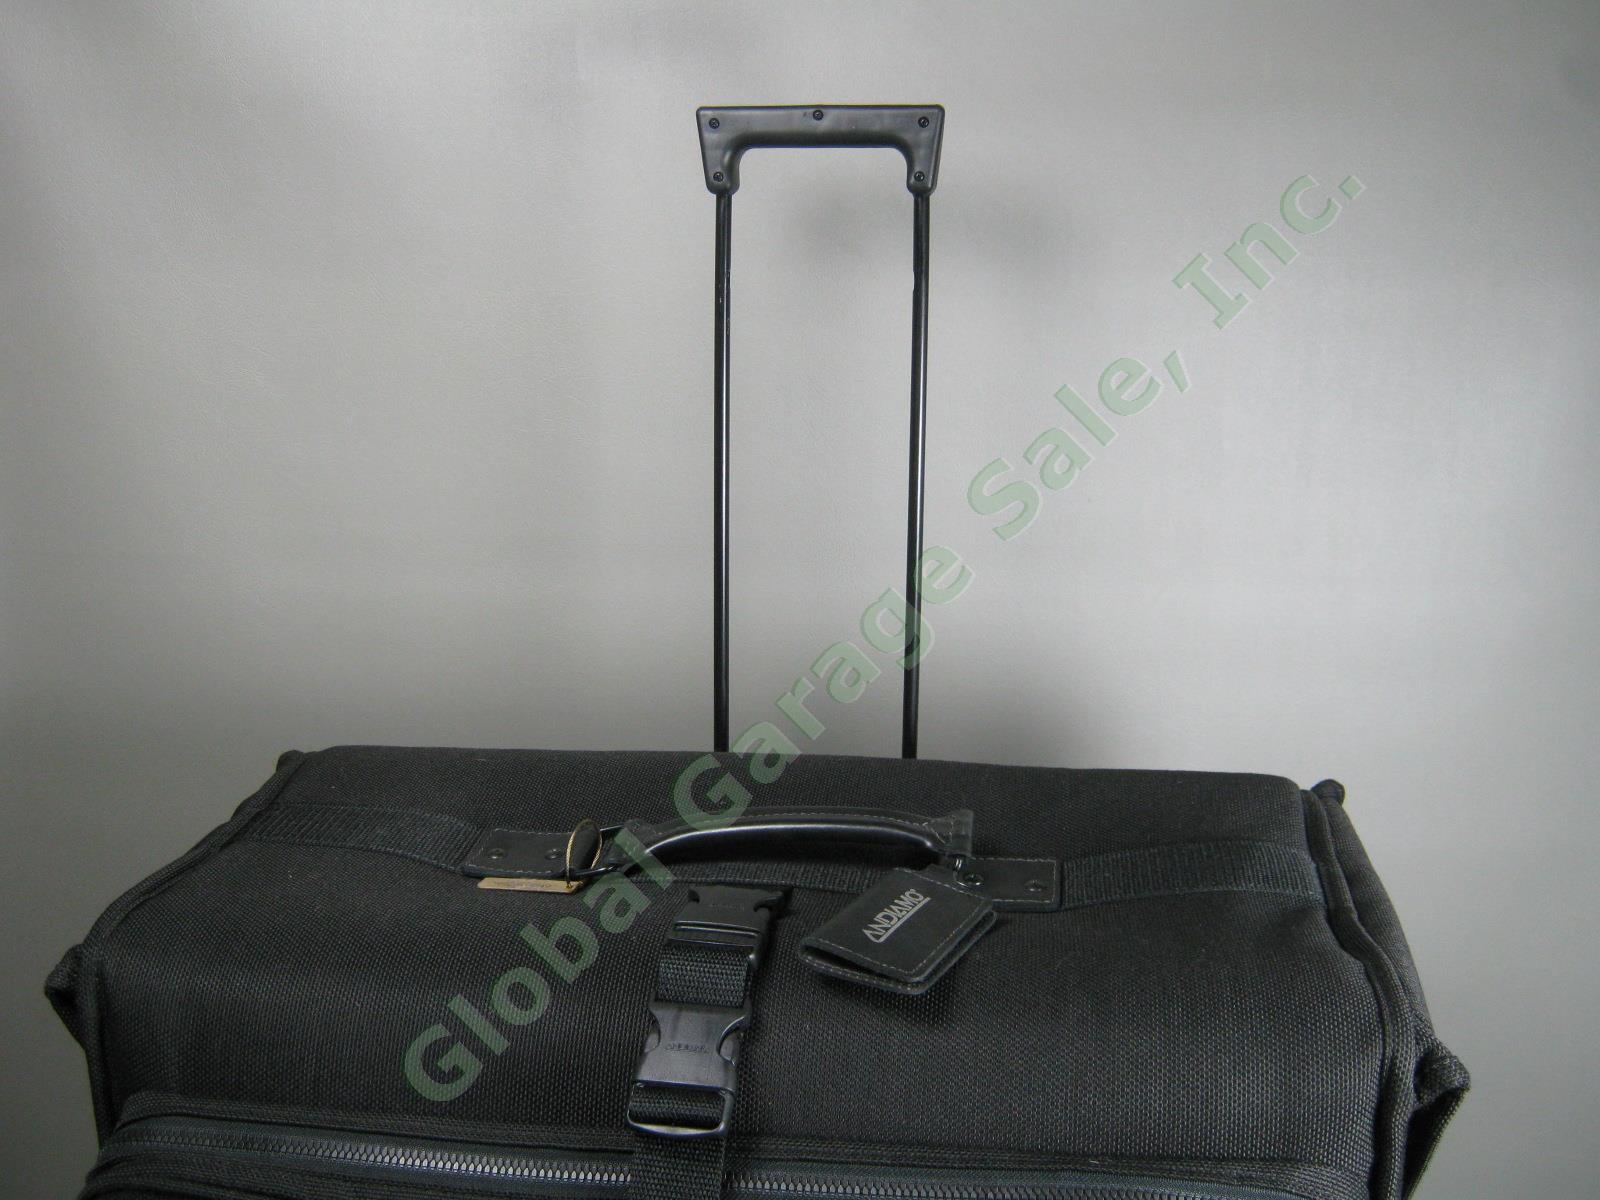 Andiamo Valoroso Wheeled Wardrobe Garment Bag Black Luggage 25x24x16 Exc Cond! 6